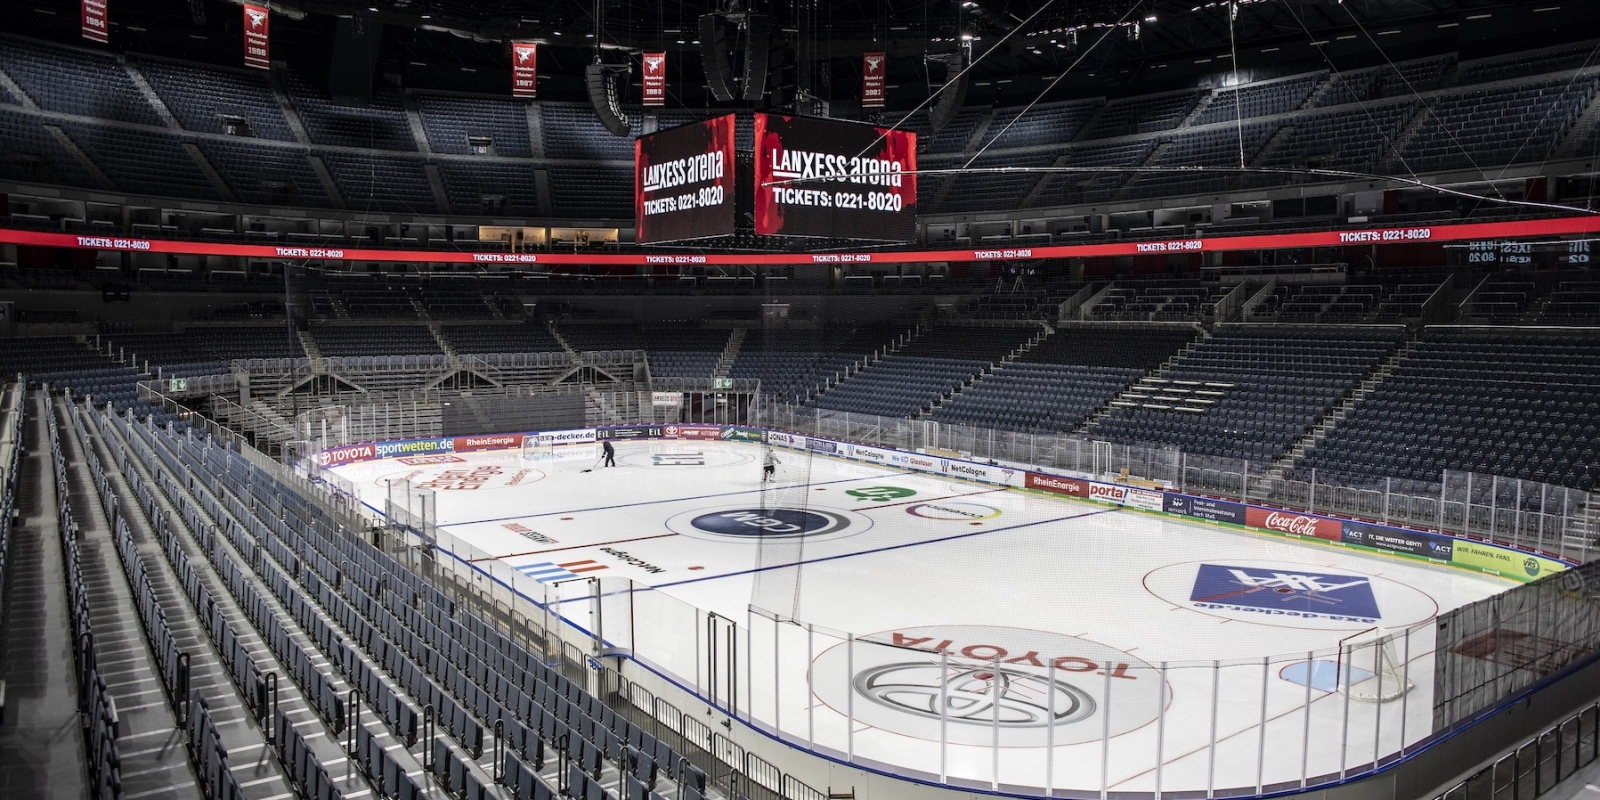 Sporthalle LANXESS Arena in Köln aus der Innenansicht, oben an der Decke hängt ein vierseitiger Bildschirmpräsentator. Die Tribühnen sind leer, auf der Eisfläche des Eishockeyfeldes trainieren zwei Eishockeyspieler.